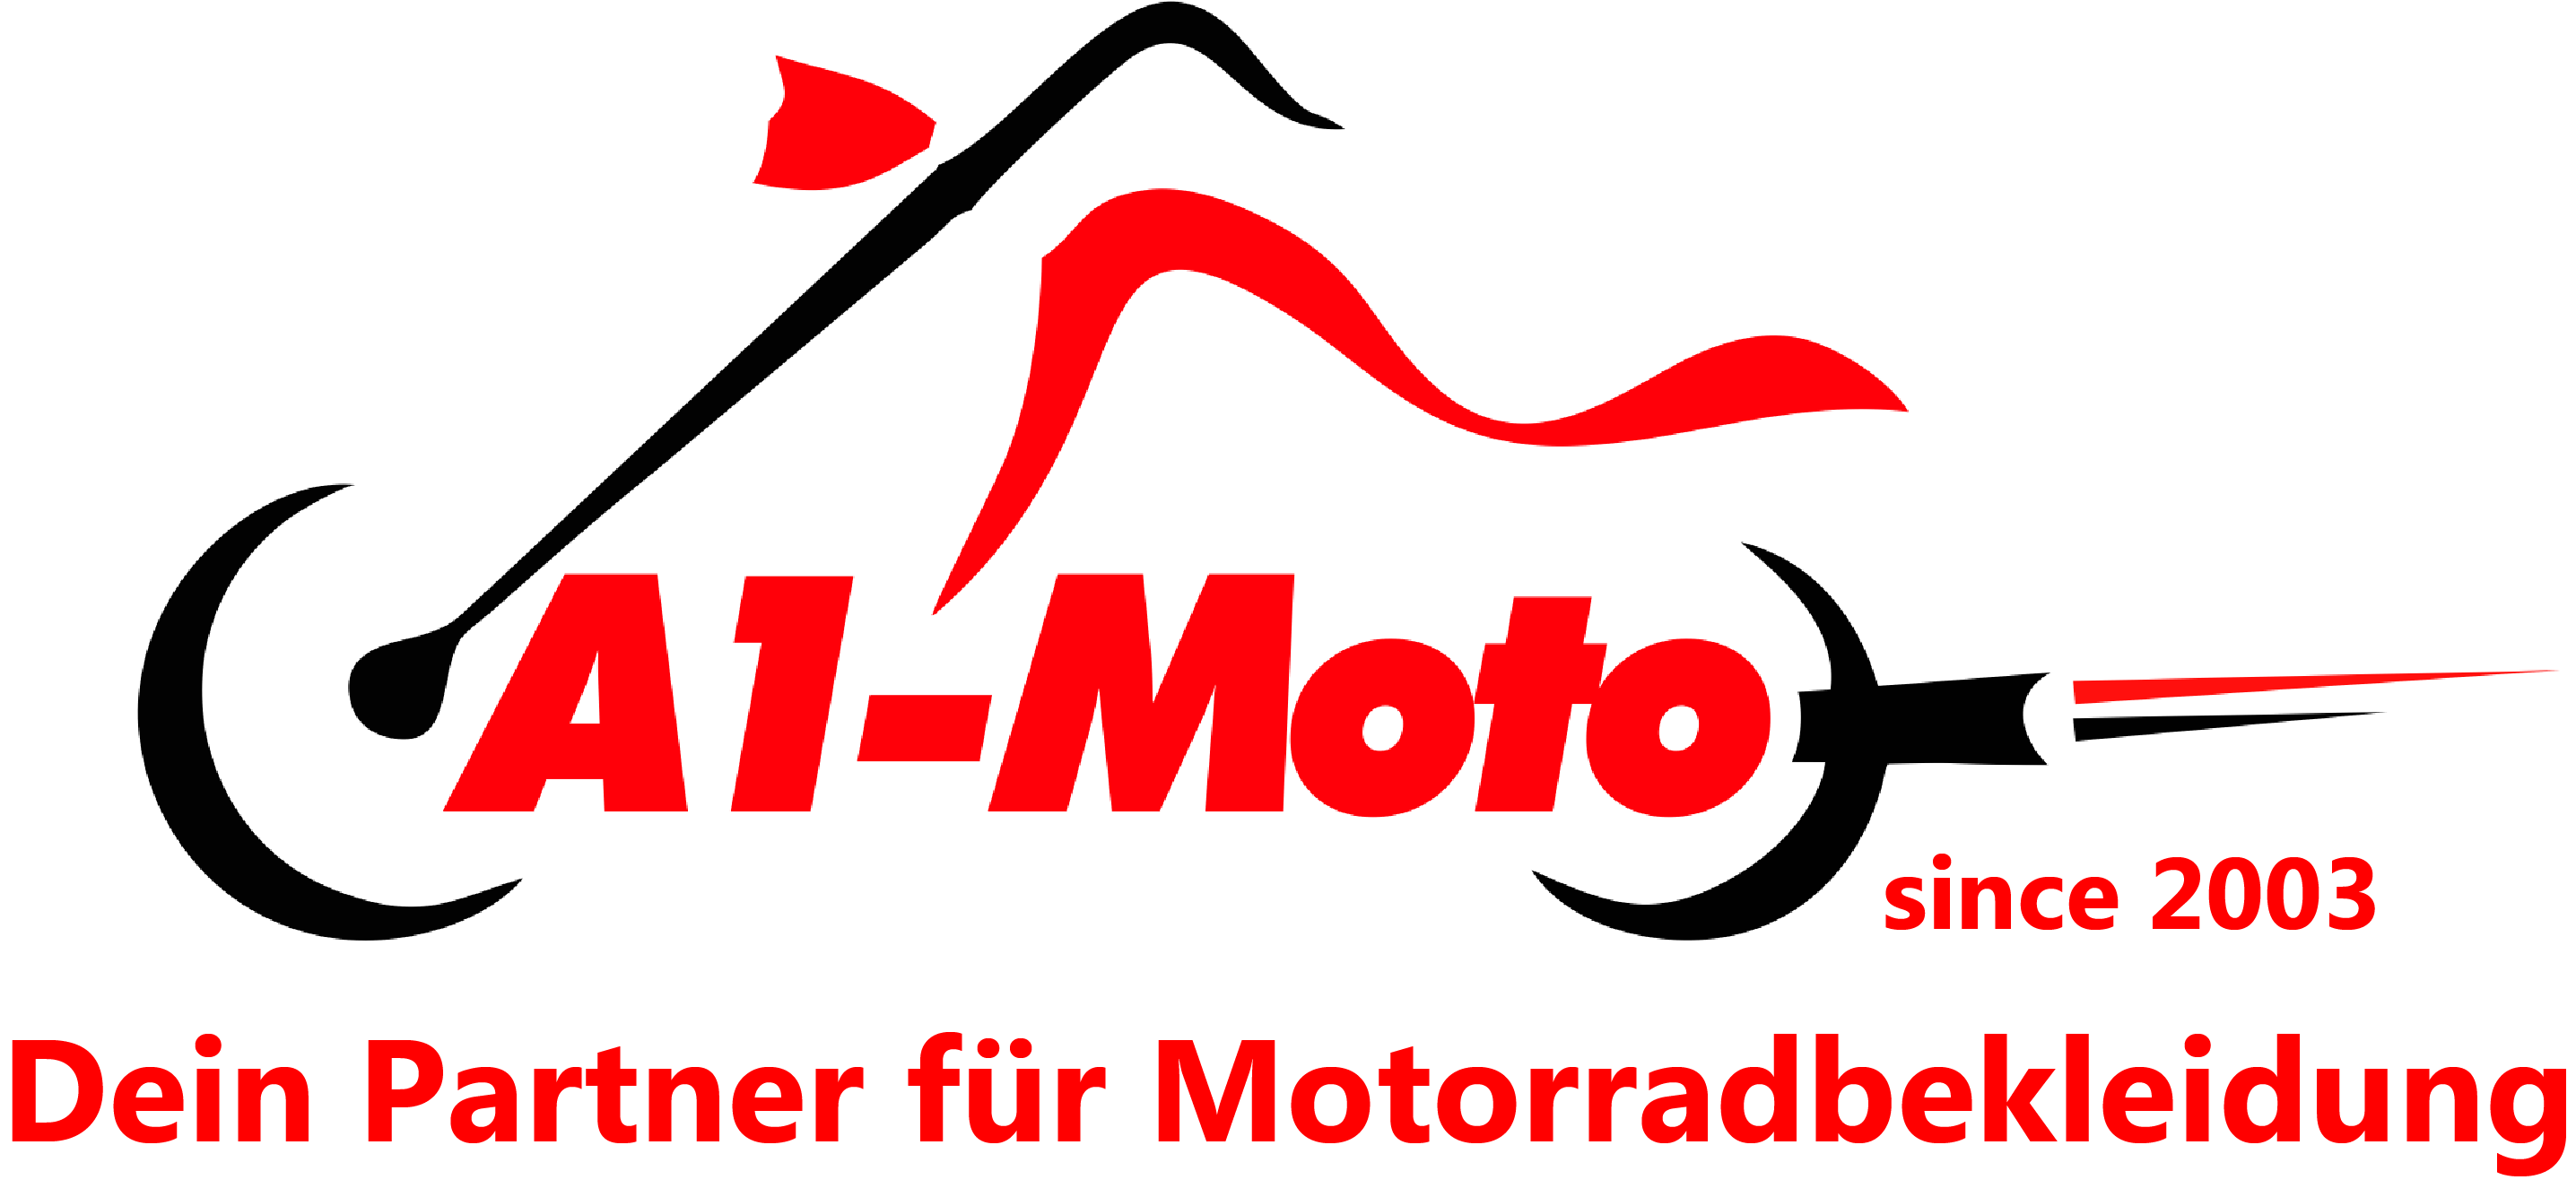 Motorrad Helmtasche Oj Atmosphere M162 LOST Grau Online-Verkauf